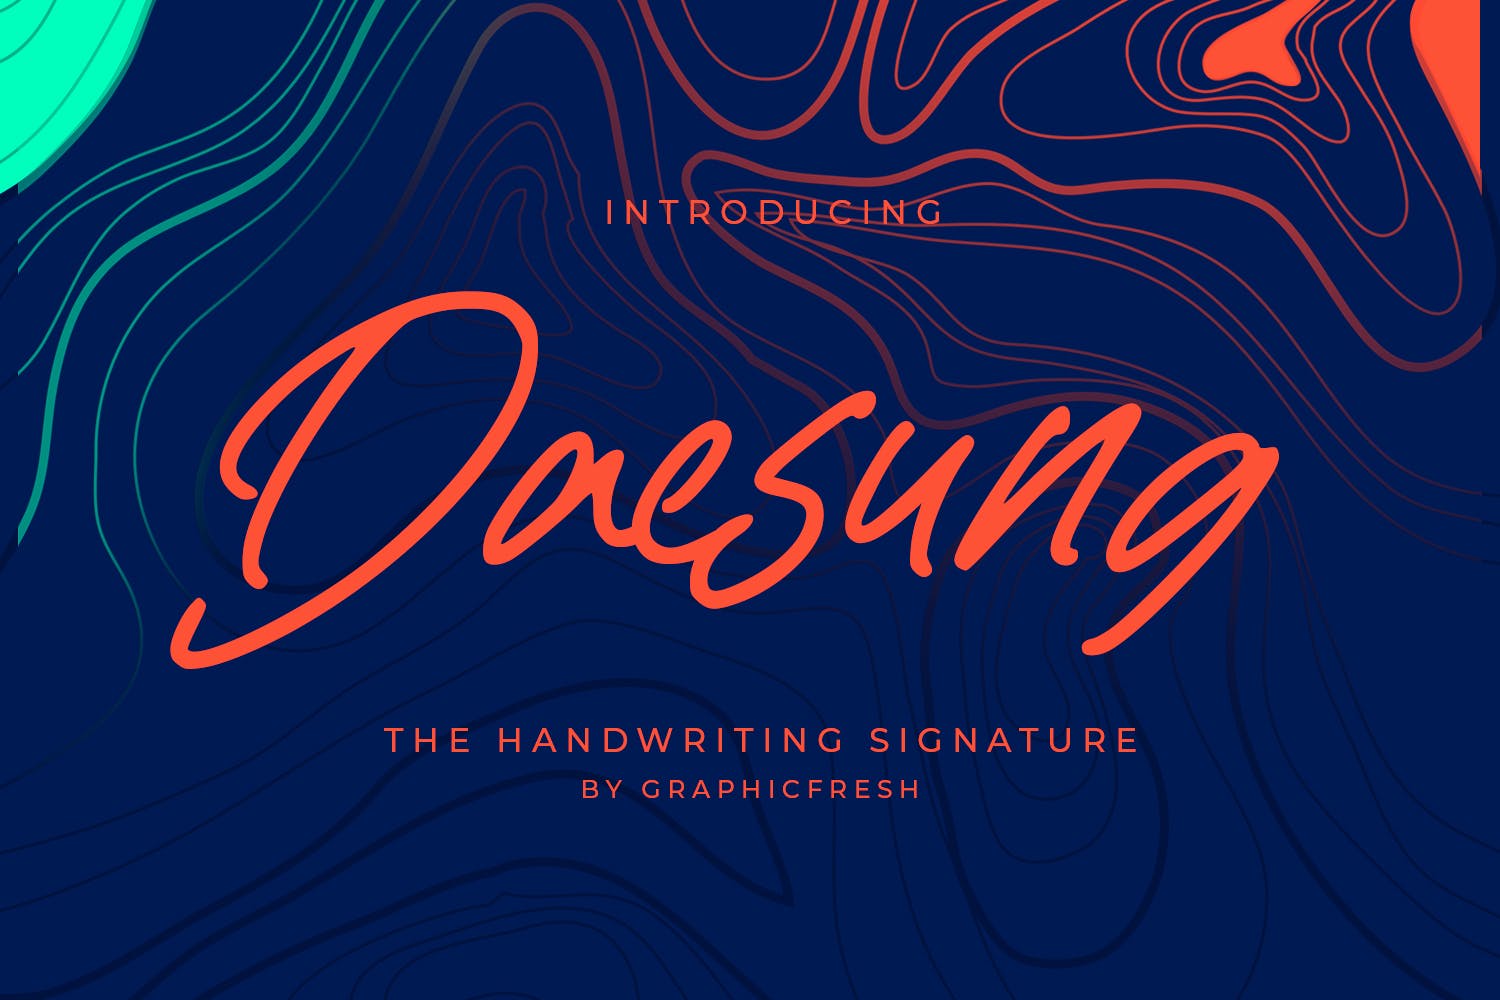 优雅现代风格英文签名字体合集 Daesung – The Handwriting Signature 设计素材 第1张